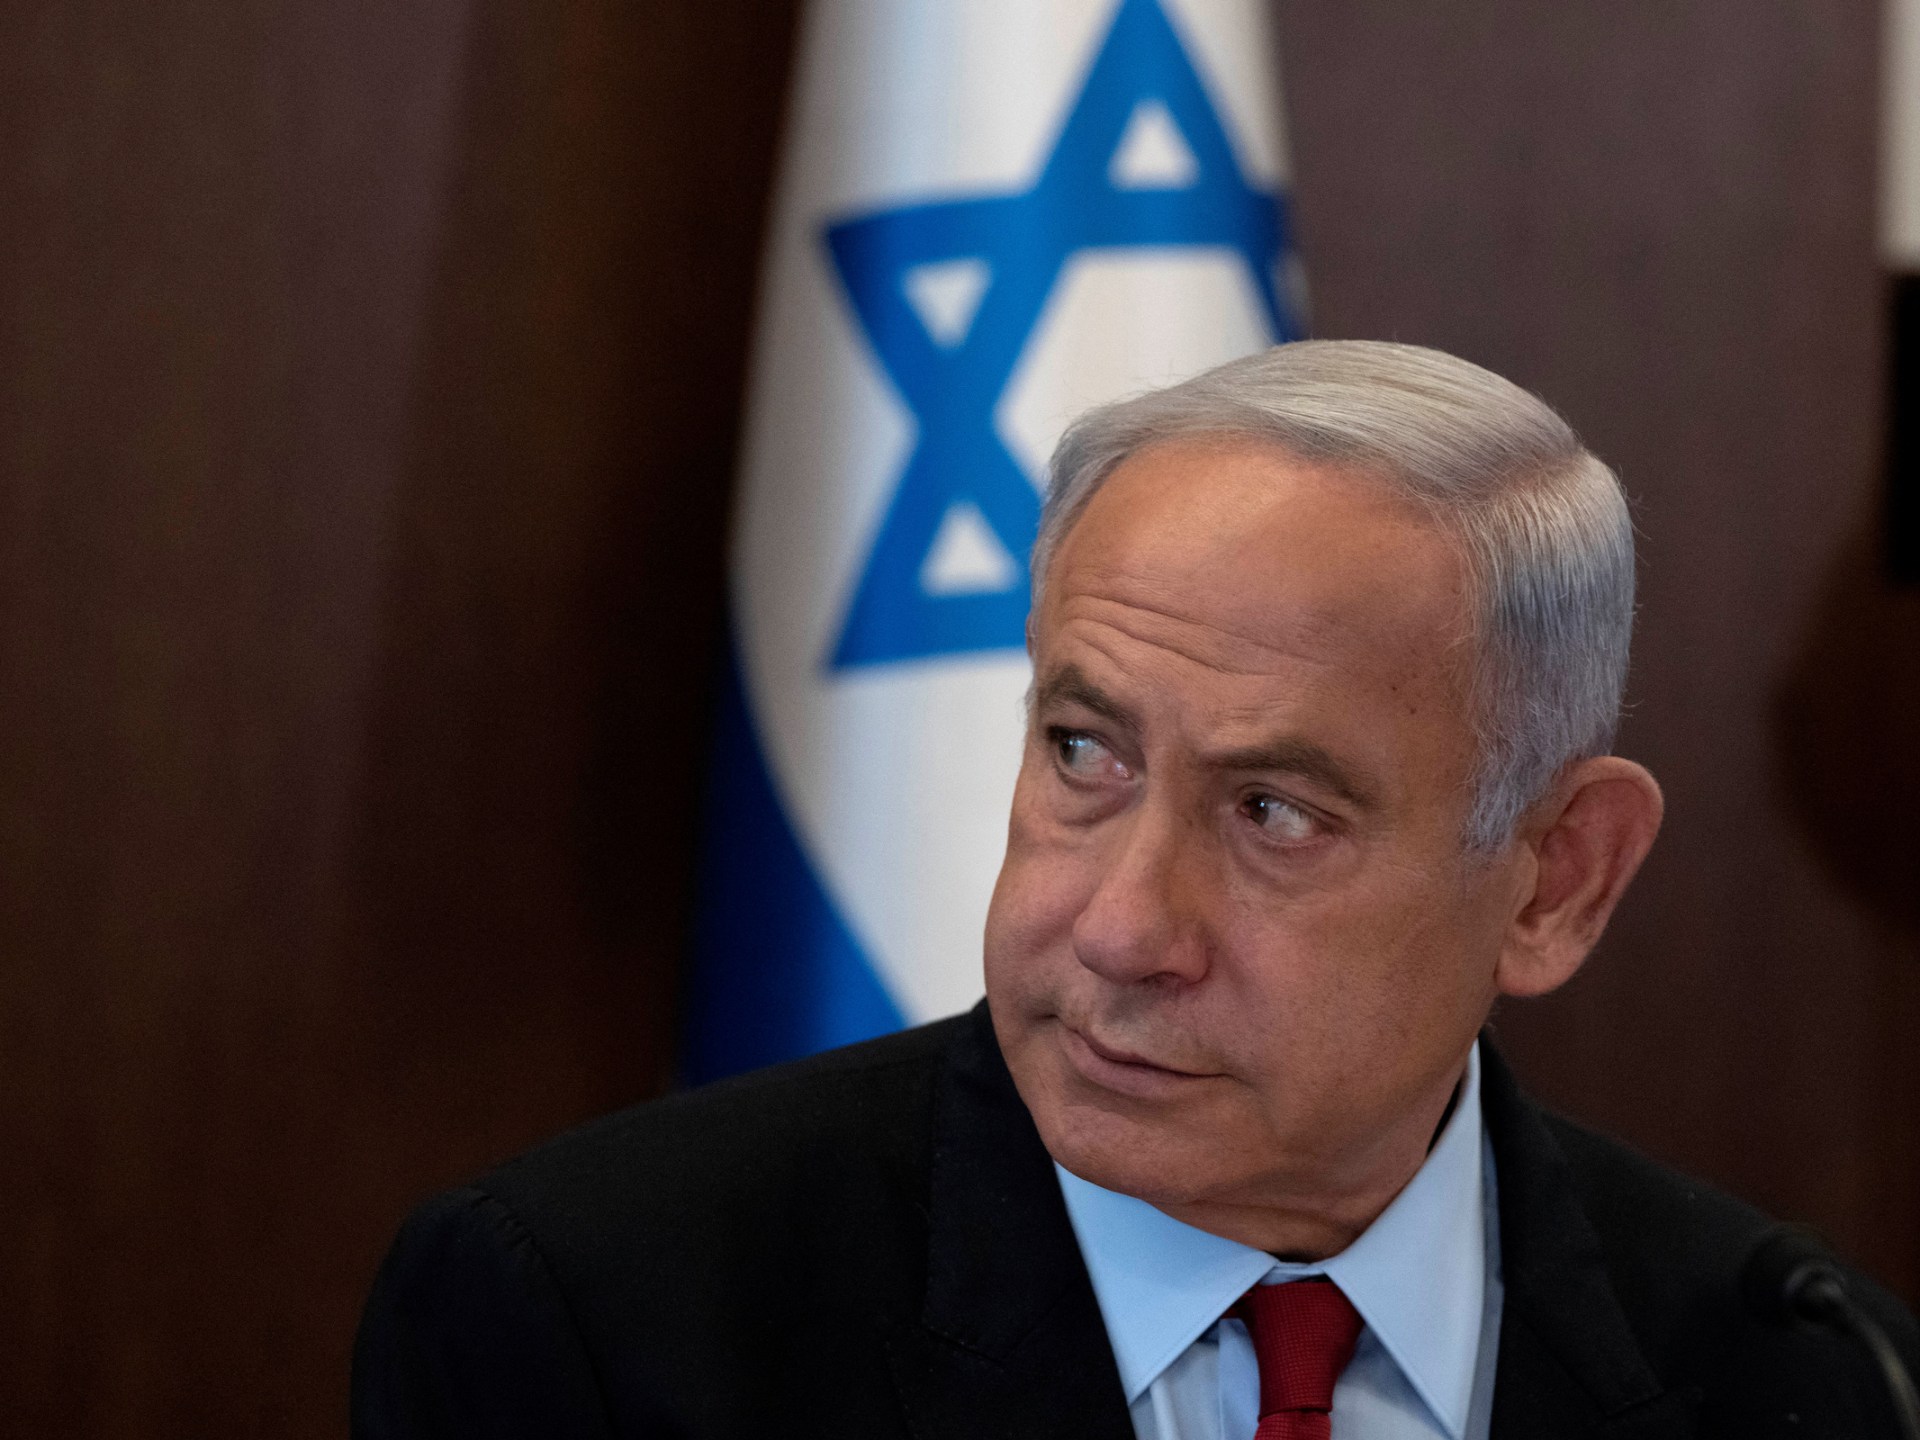 Israel PM Netanyahu delays judicial overhaul plan after protests | News